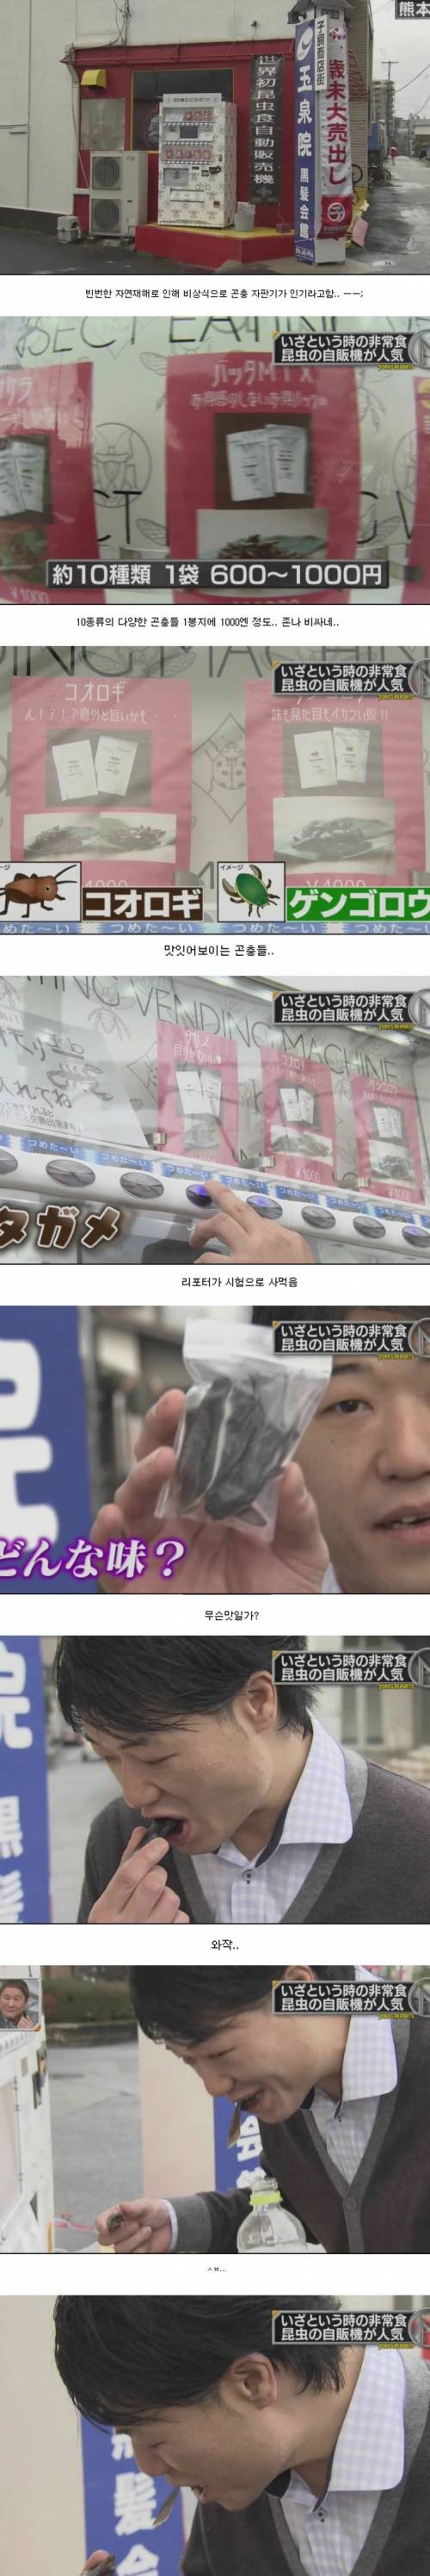 일본의 곤충식 자판기.jpg